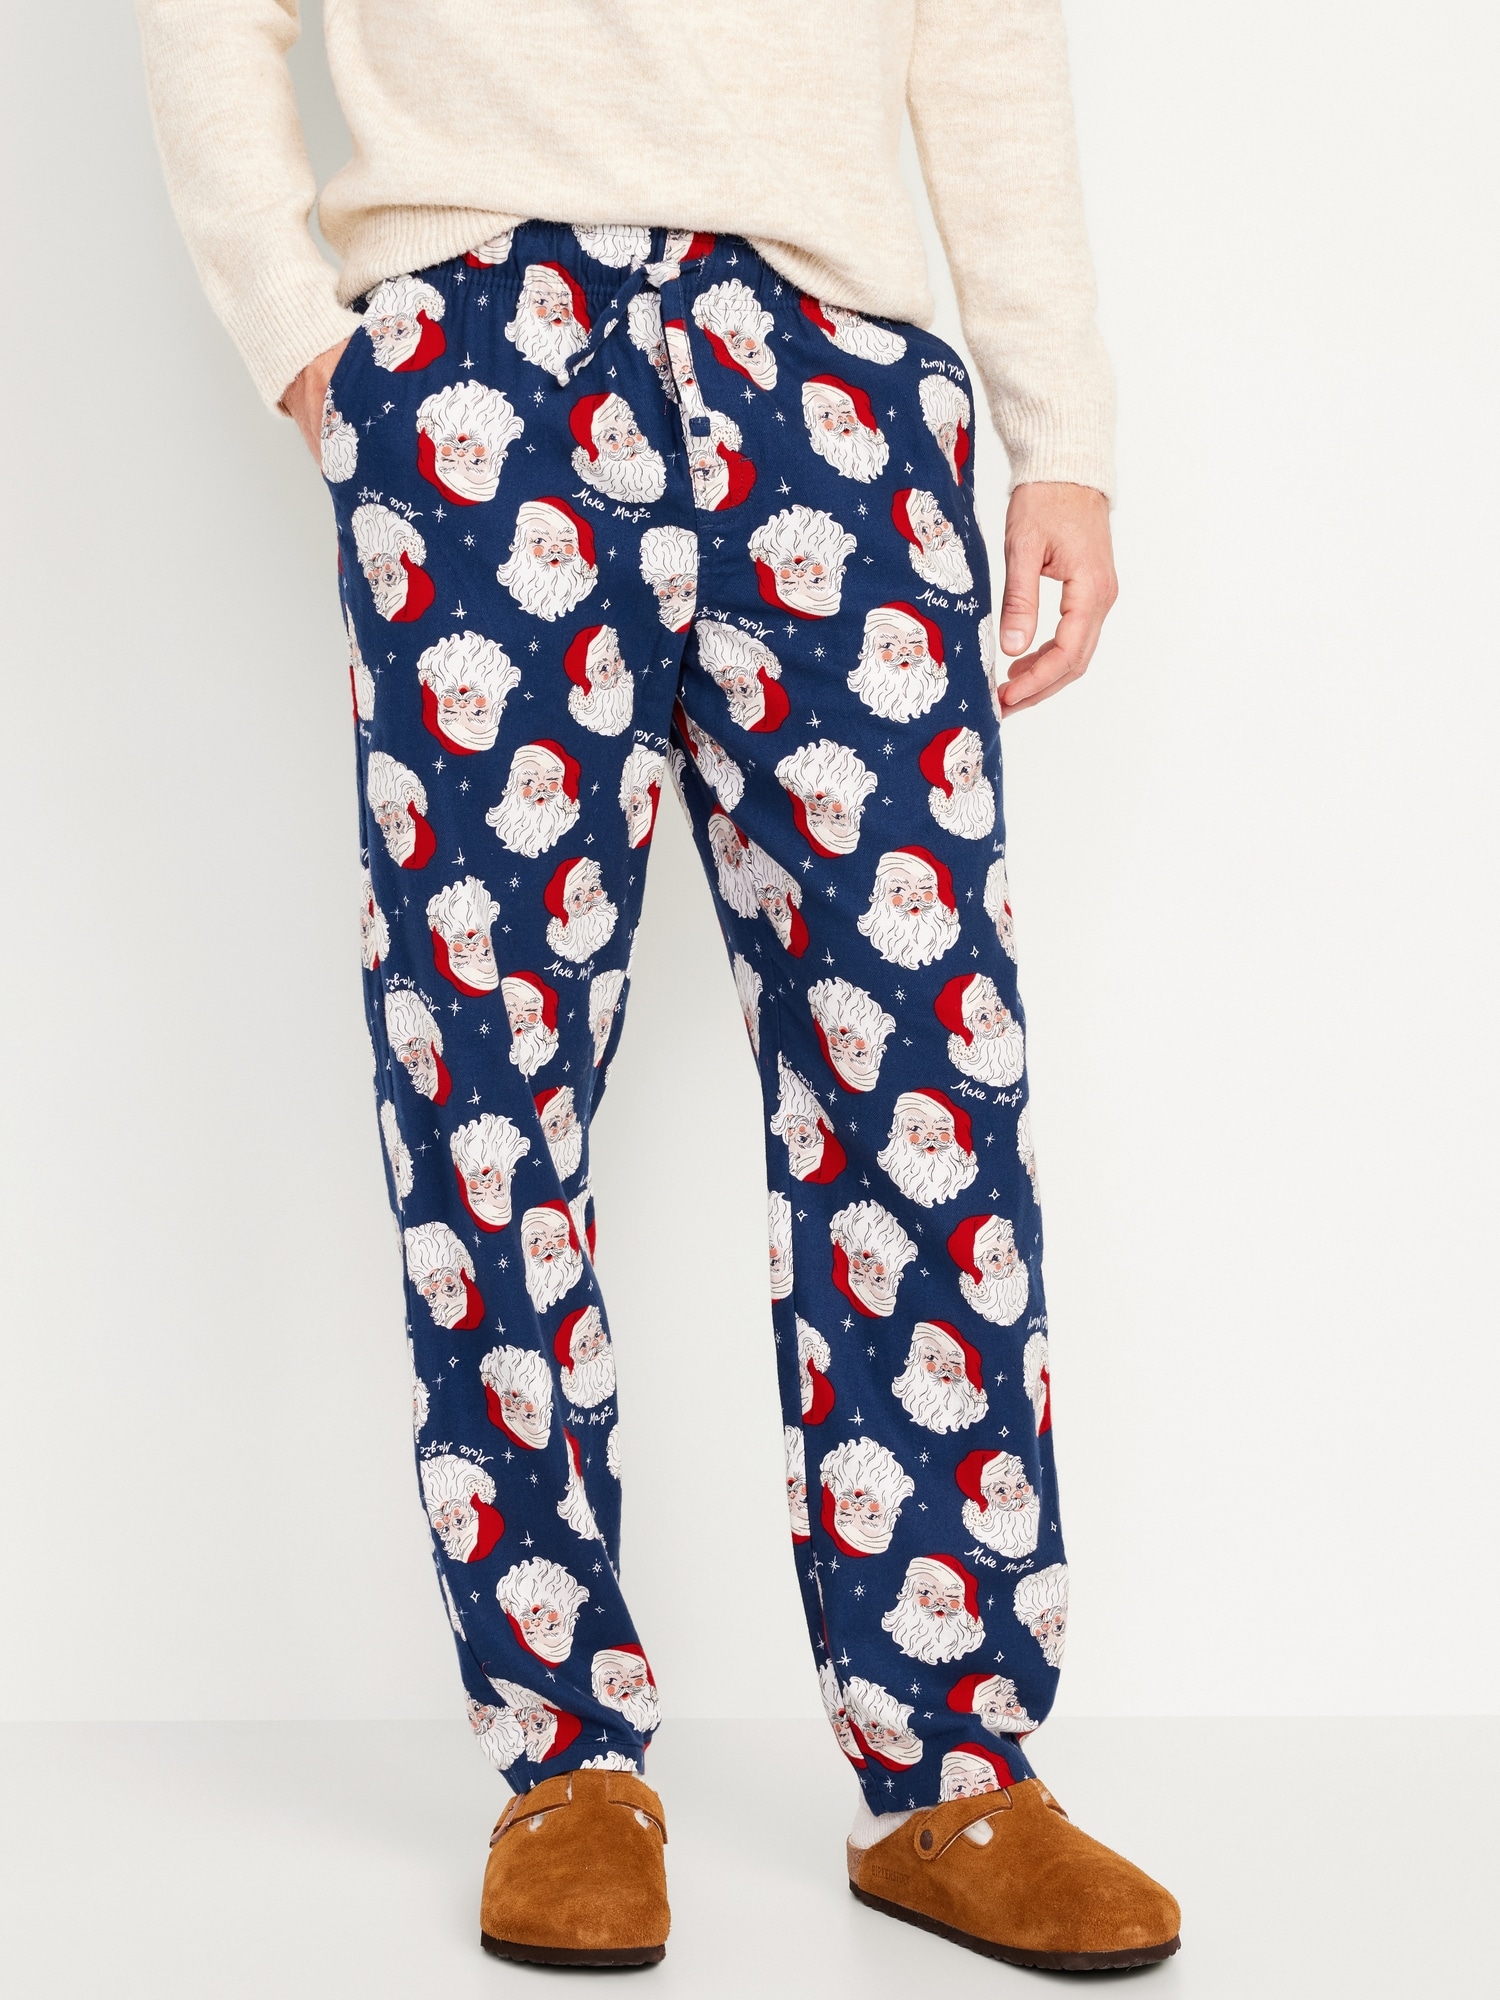 NWT Old Navy Christmas Pine Tree Thermal Knit Pajama Pants Sleep